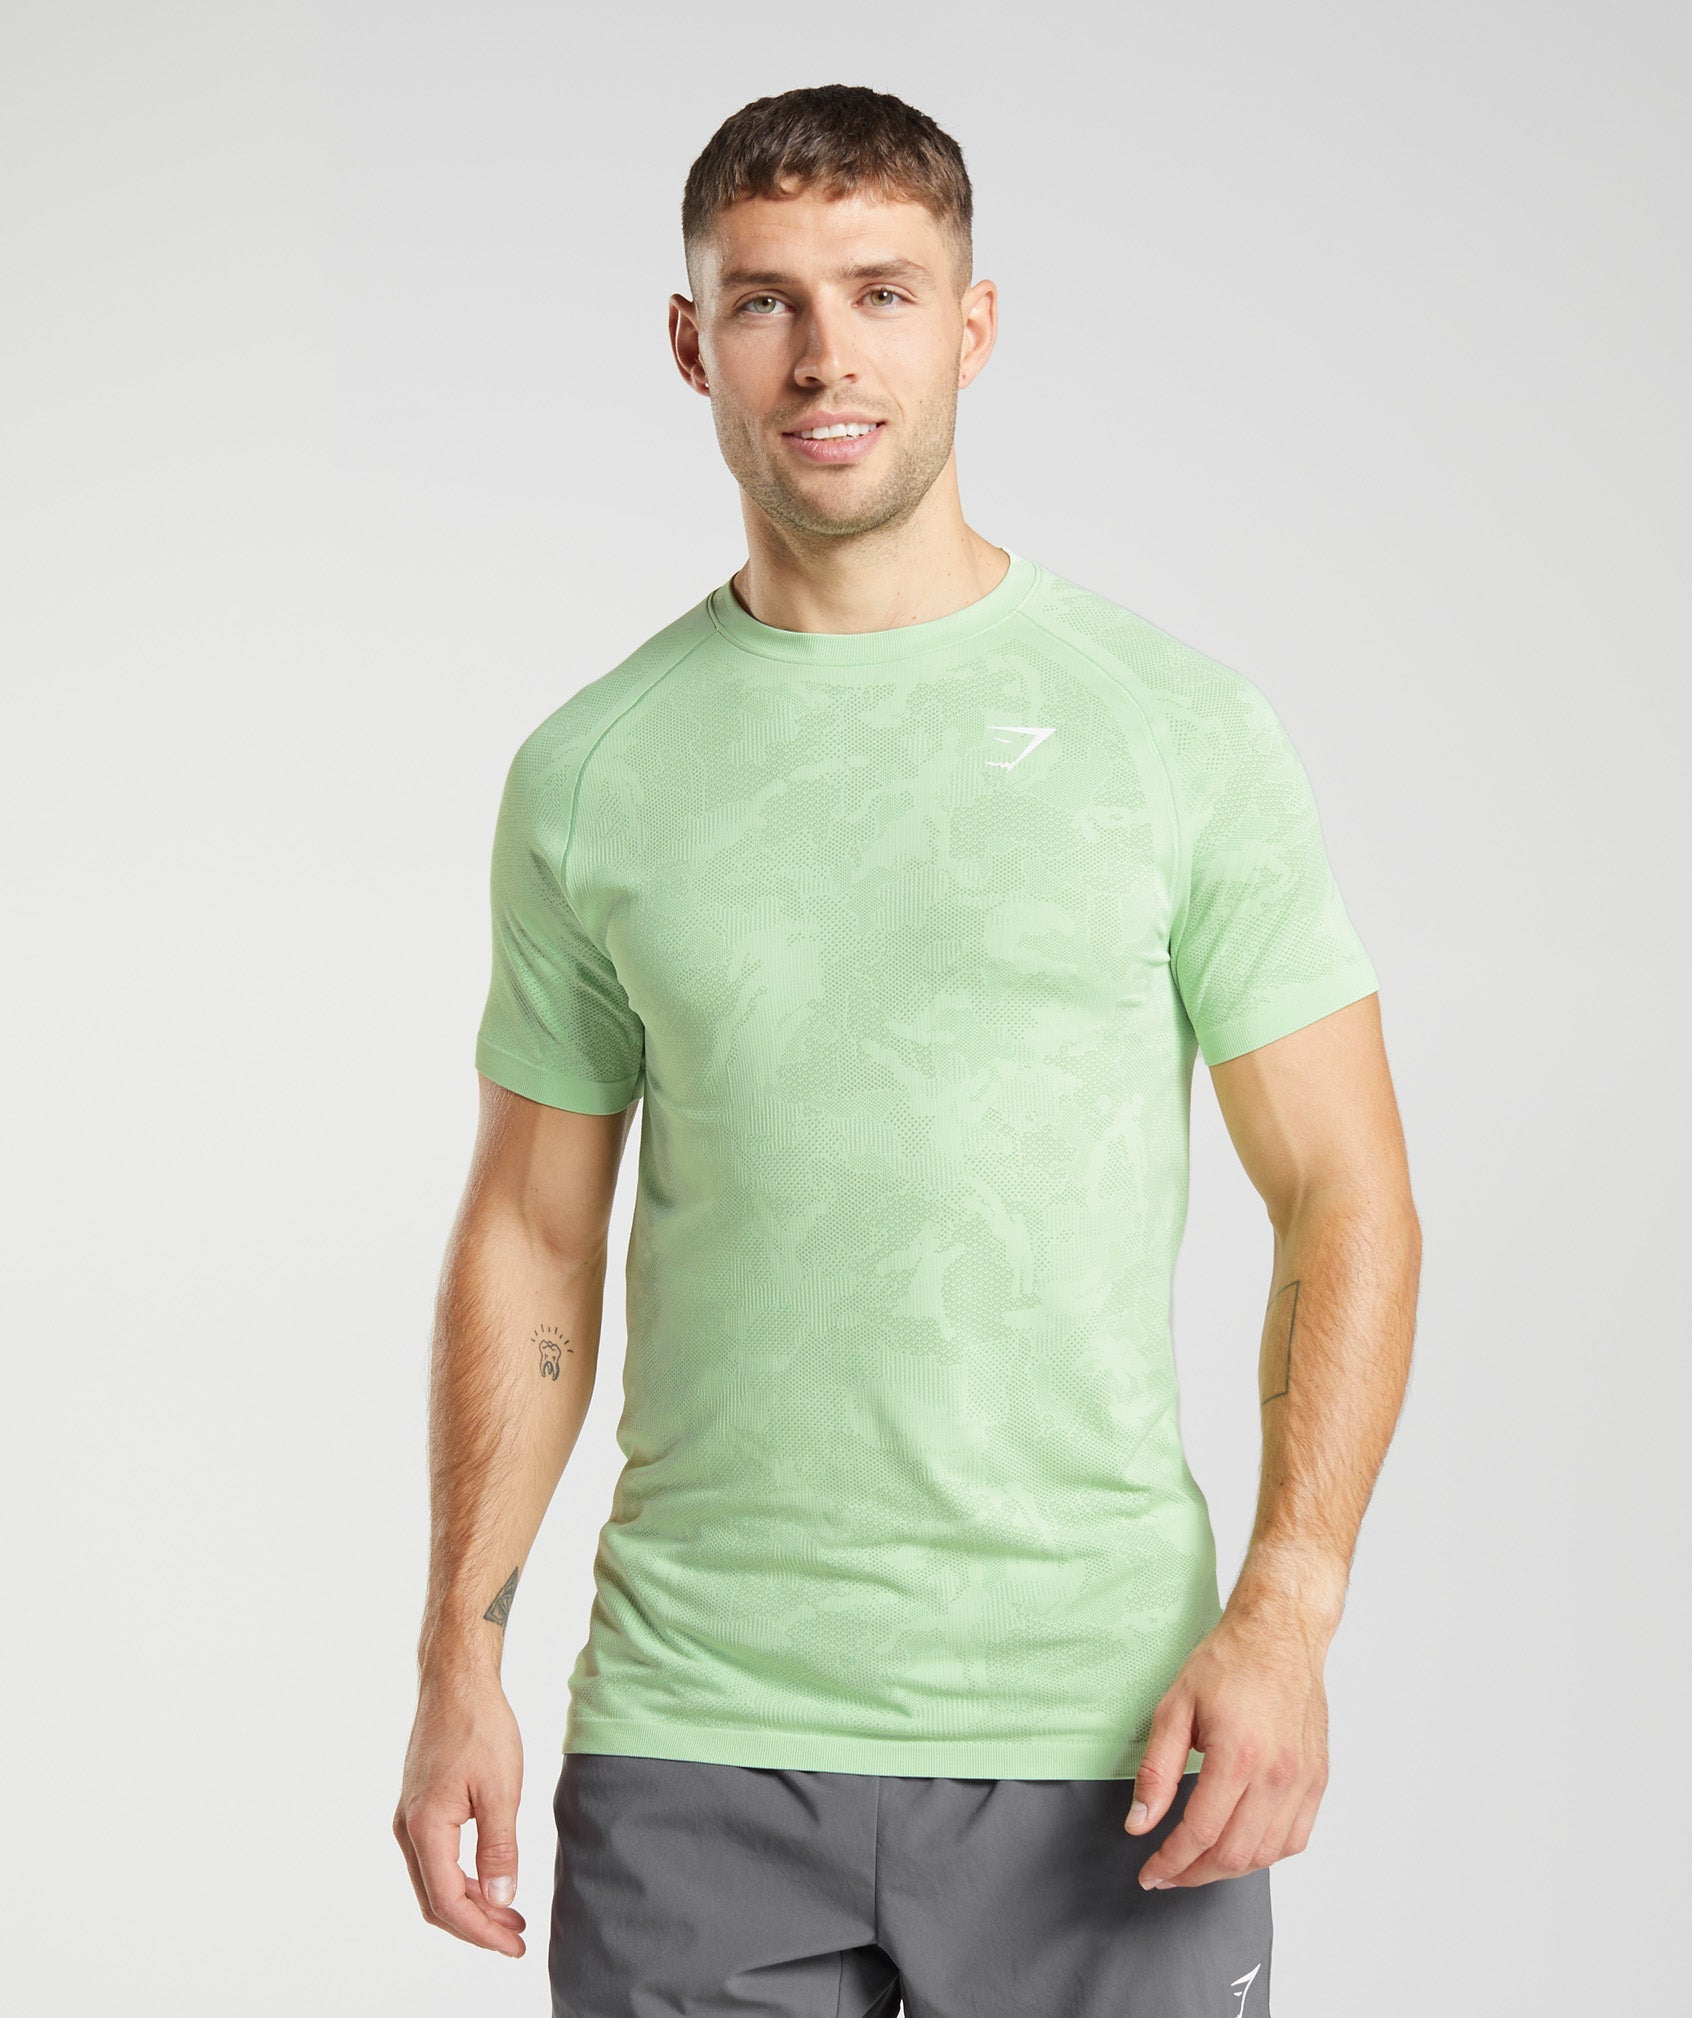 Men's Seamless Tops & T Shirts – Gymshark